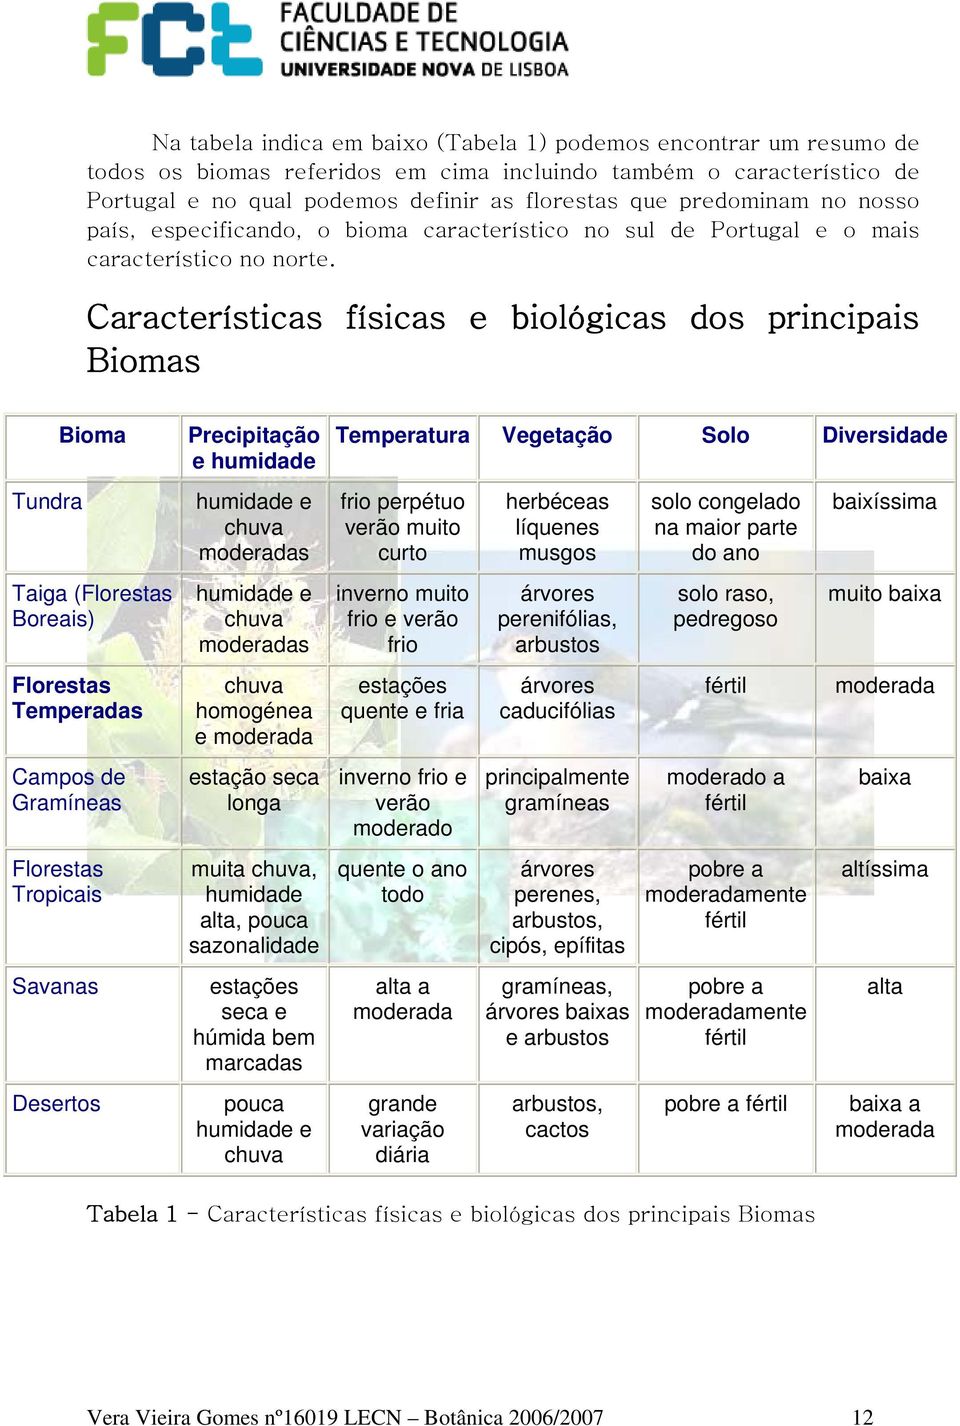 Características físicas e biológicas dos principais Biomas Tundra Bioma Taiga (Florestas Boreais) Florestas Temperadas Campos de Gramíneas Florestas Tropicais Savanas Desertos Precipitação e humidade